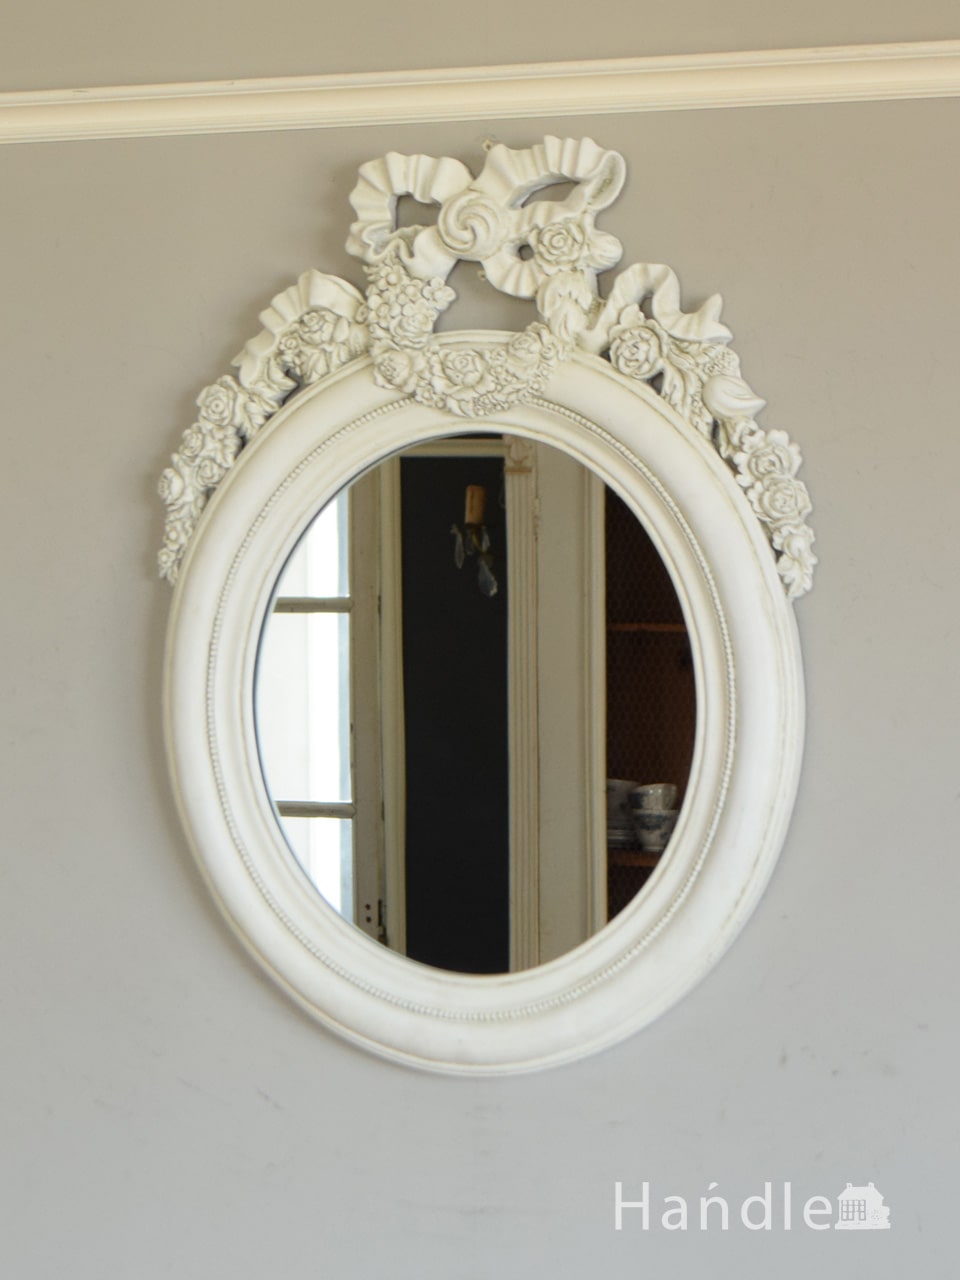 フレンチアンティーク調のおしゃれな鏡、リボン付きのウォールミラー 